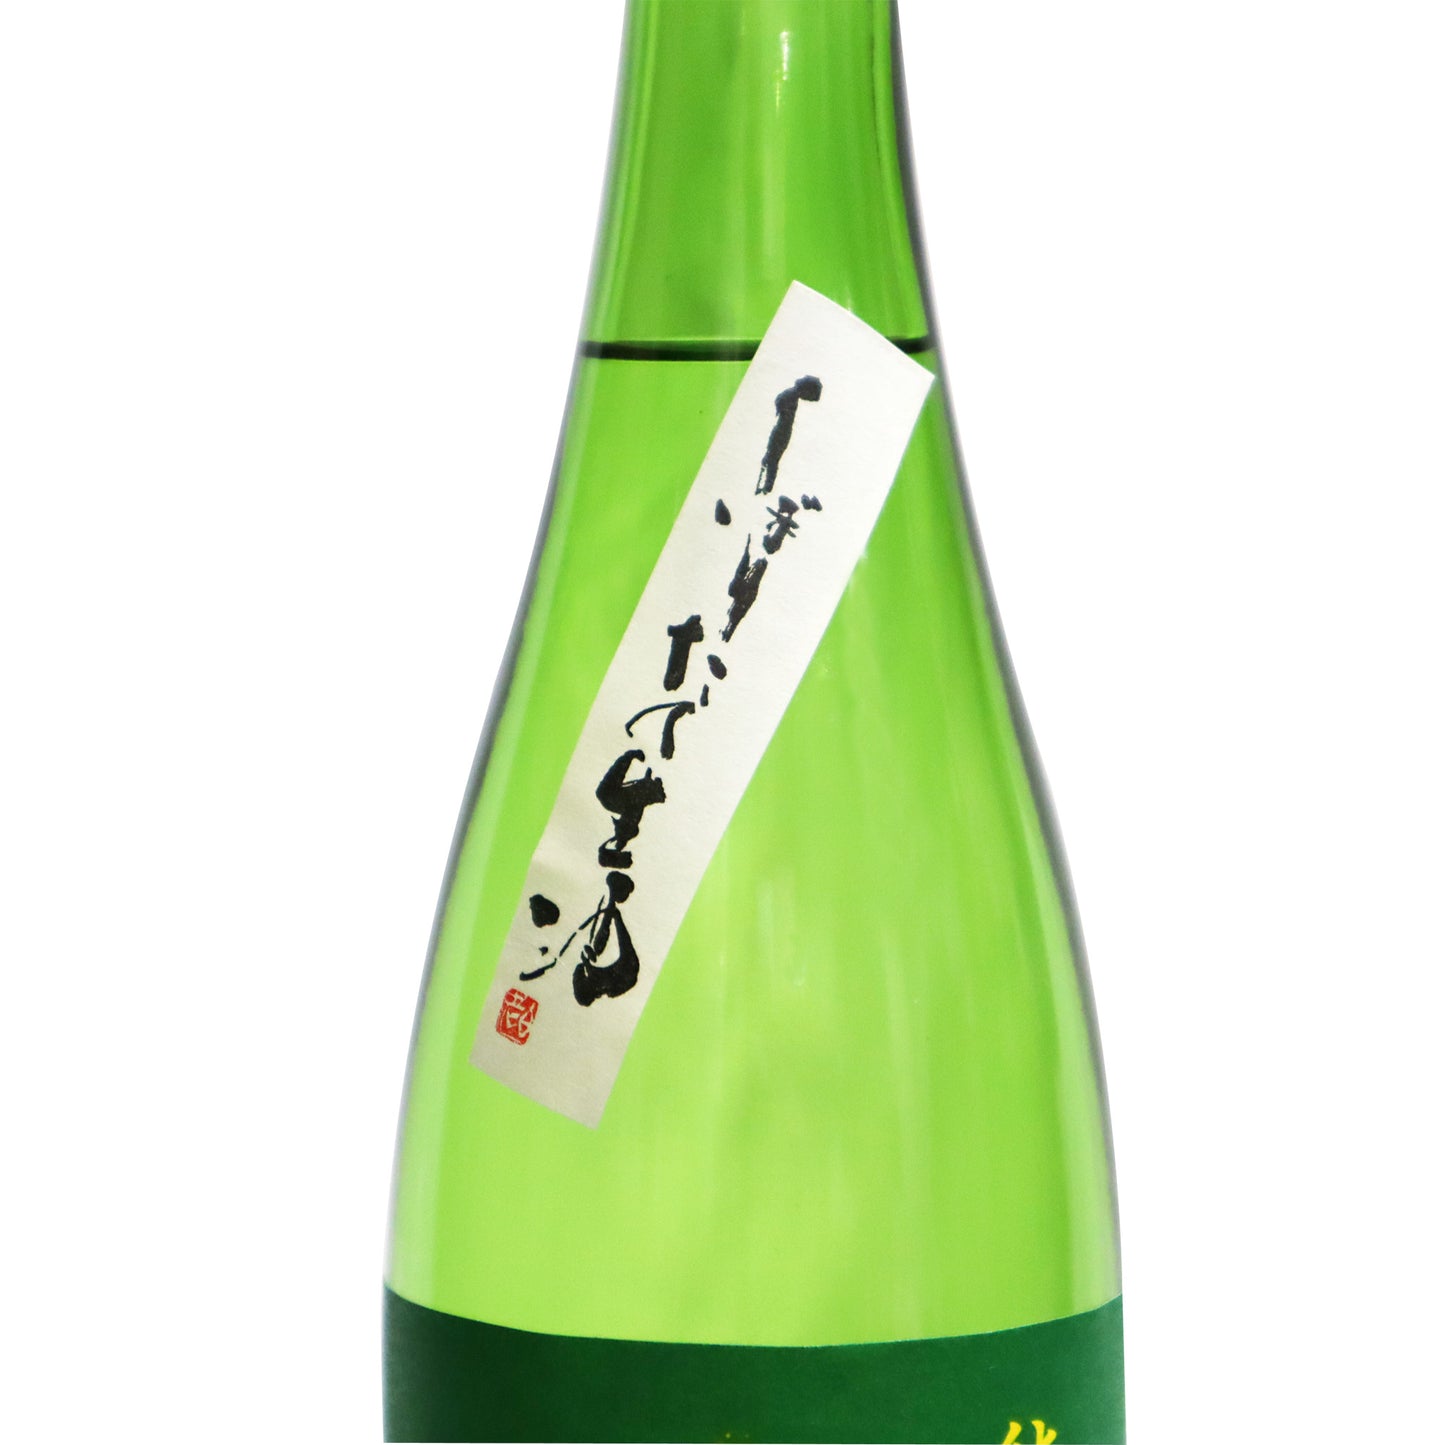 【白老】若水純米 しぼりたて生酒 720ml/澤田酒造